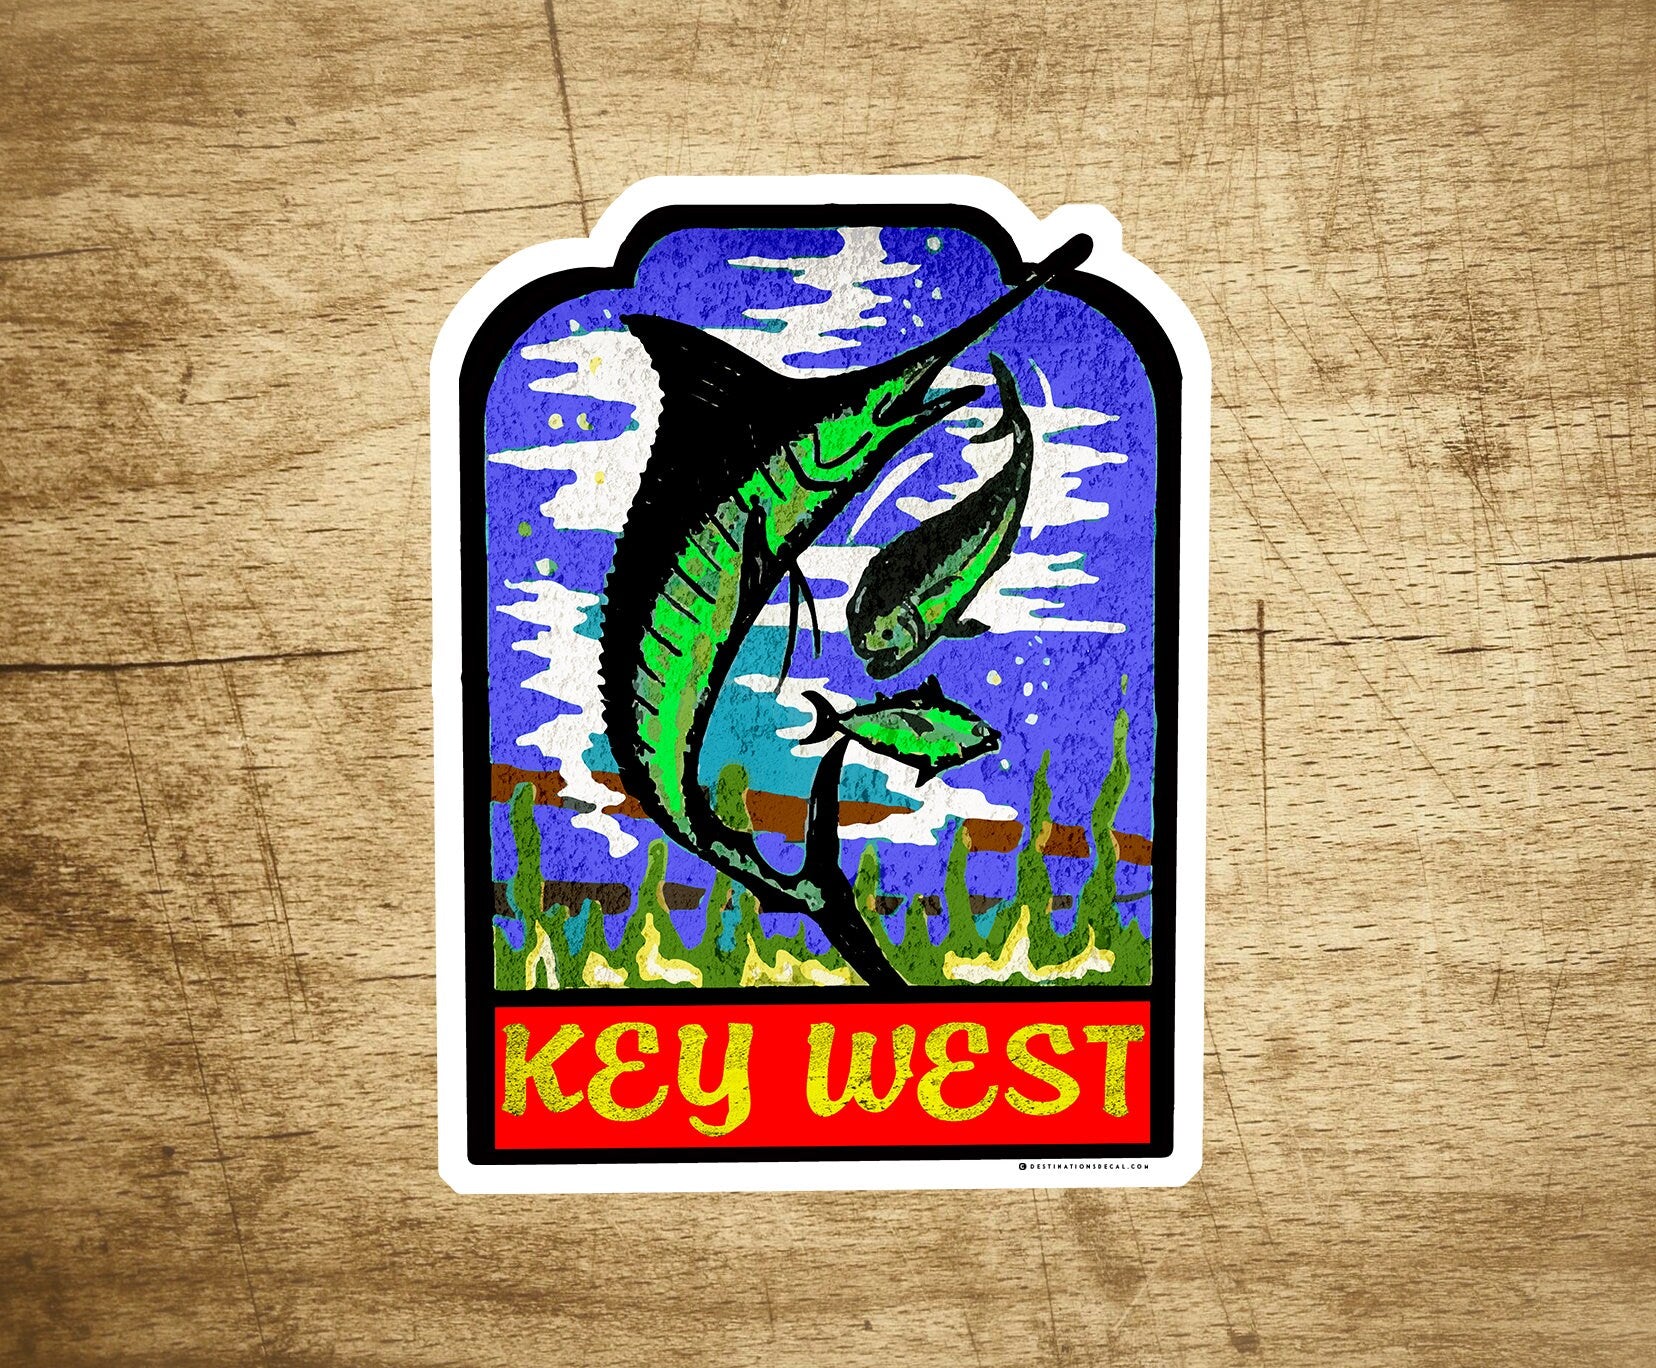 KEY WEST FLORIDA Vinyl Decal Sticker Vintage Style 2 7/8" x 3 5/8"